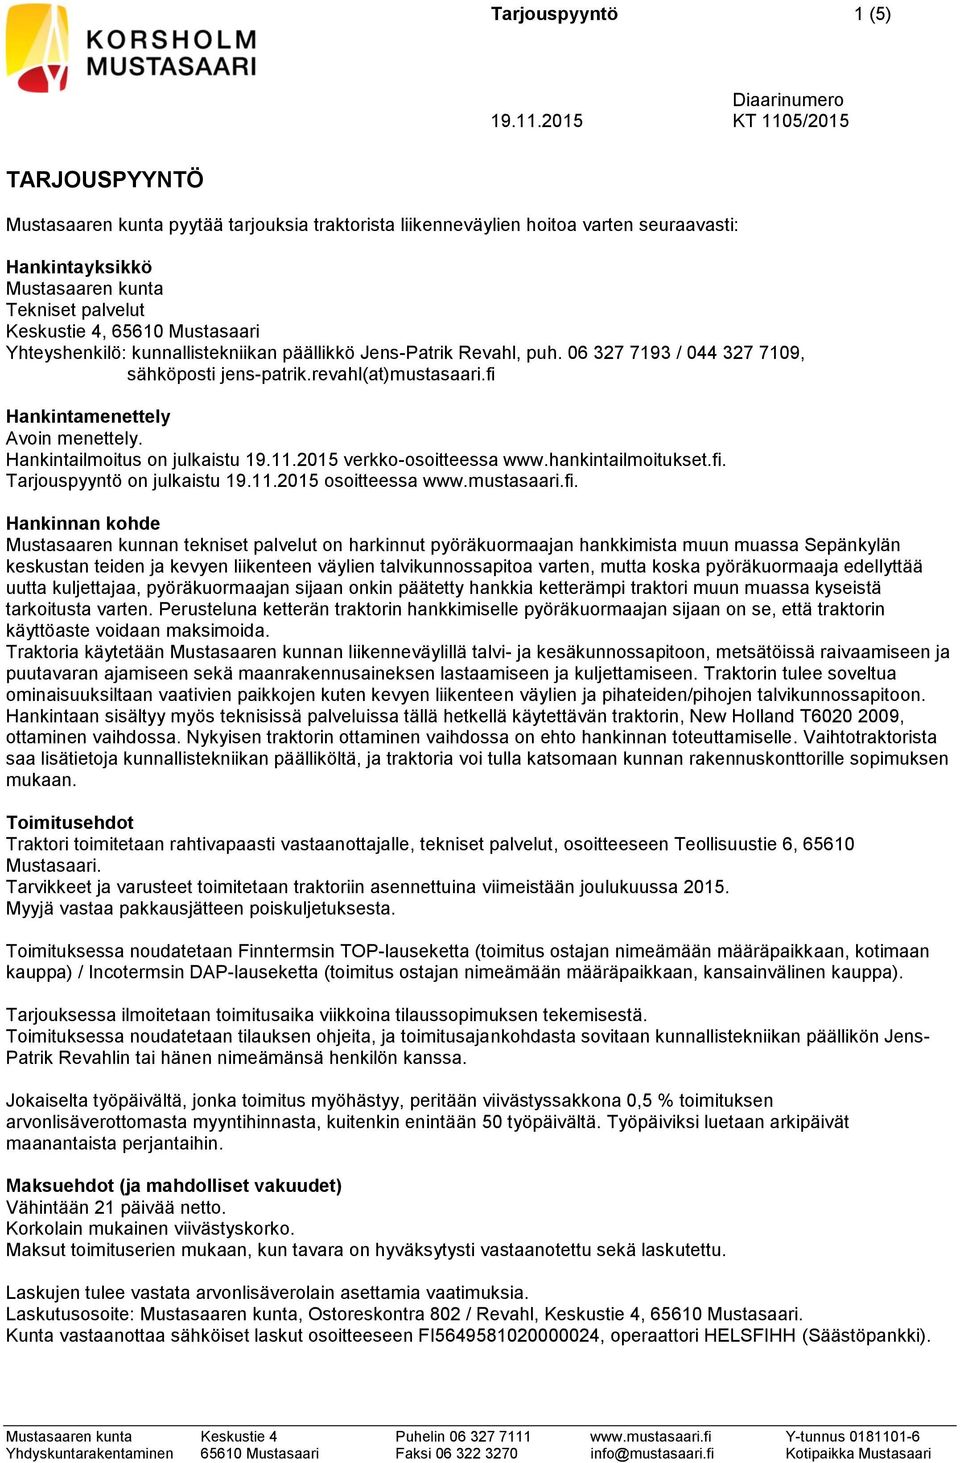 Hankintailmoitus on julkaistu 19.11.2015 verkko-osoitteessa www.hankintailmoitukset.fi.